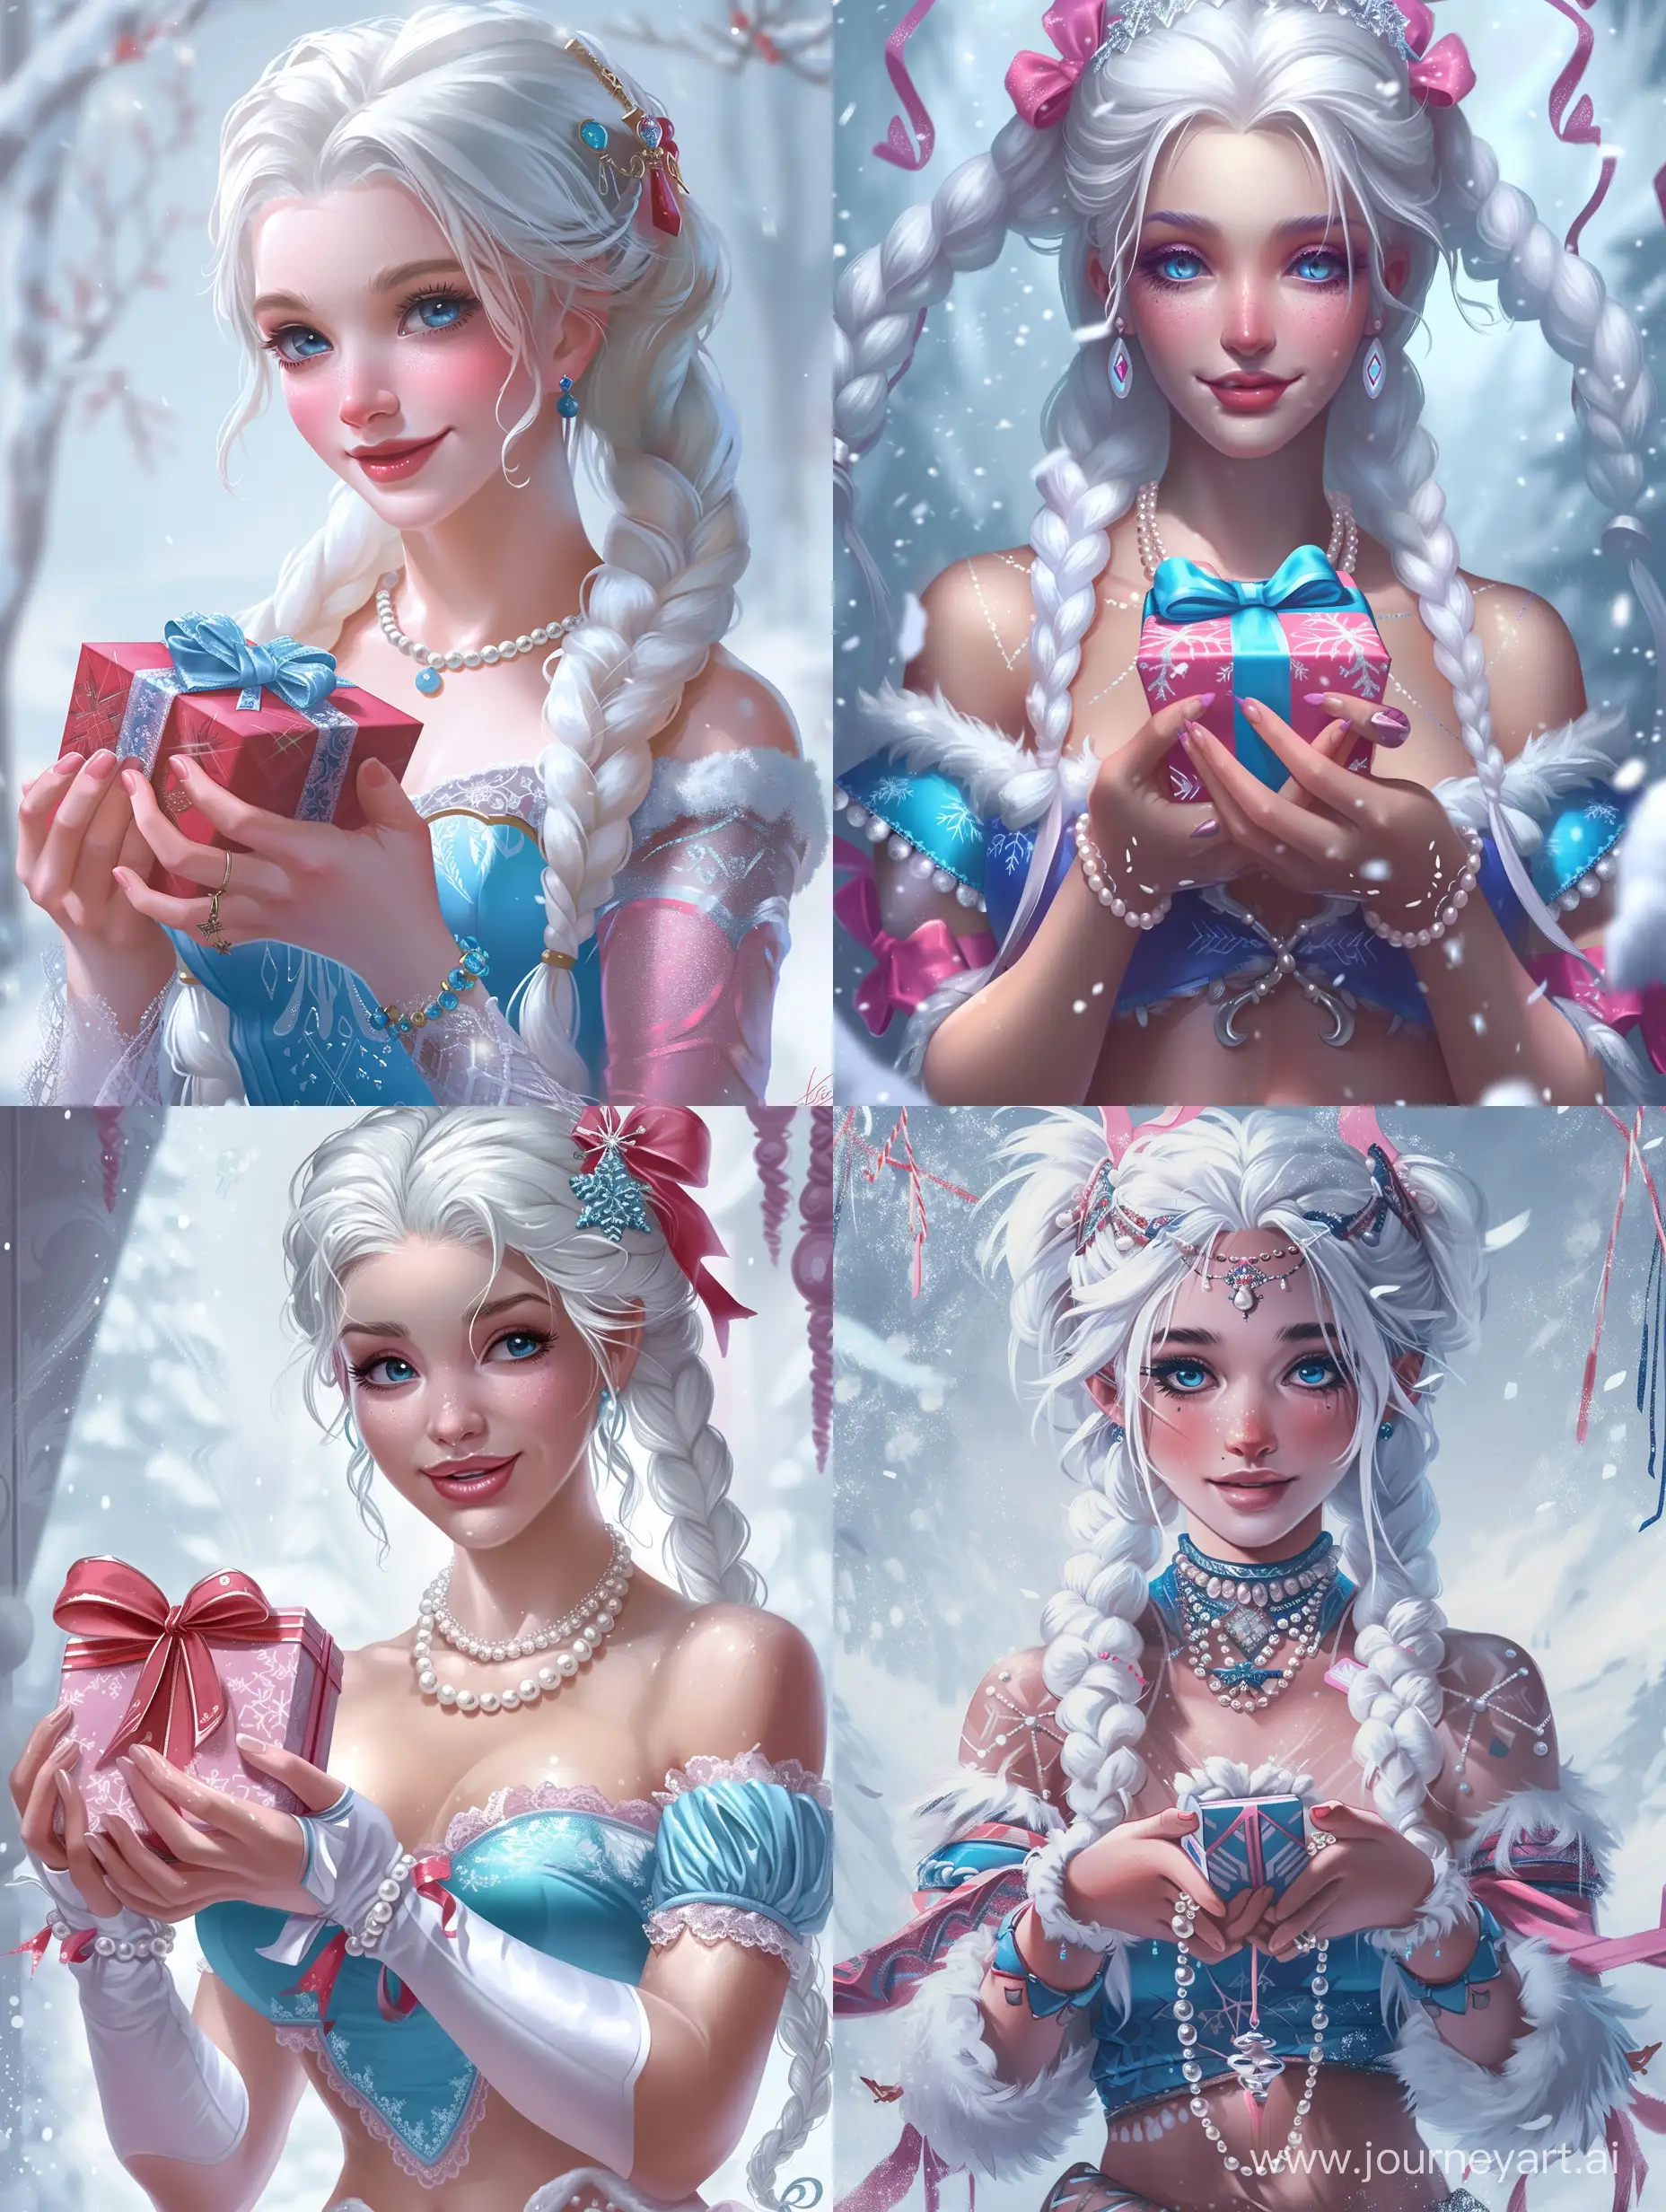 снегурочка, очень красивая, милая, белые косы, жемчуга, голубой и розовый цвет в нарядах, держит в руках подарок, Красивые руки, рисунок, эстетика праздника, красивый арт, динамичная поза